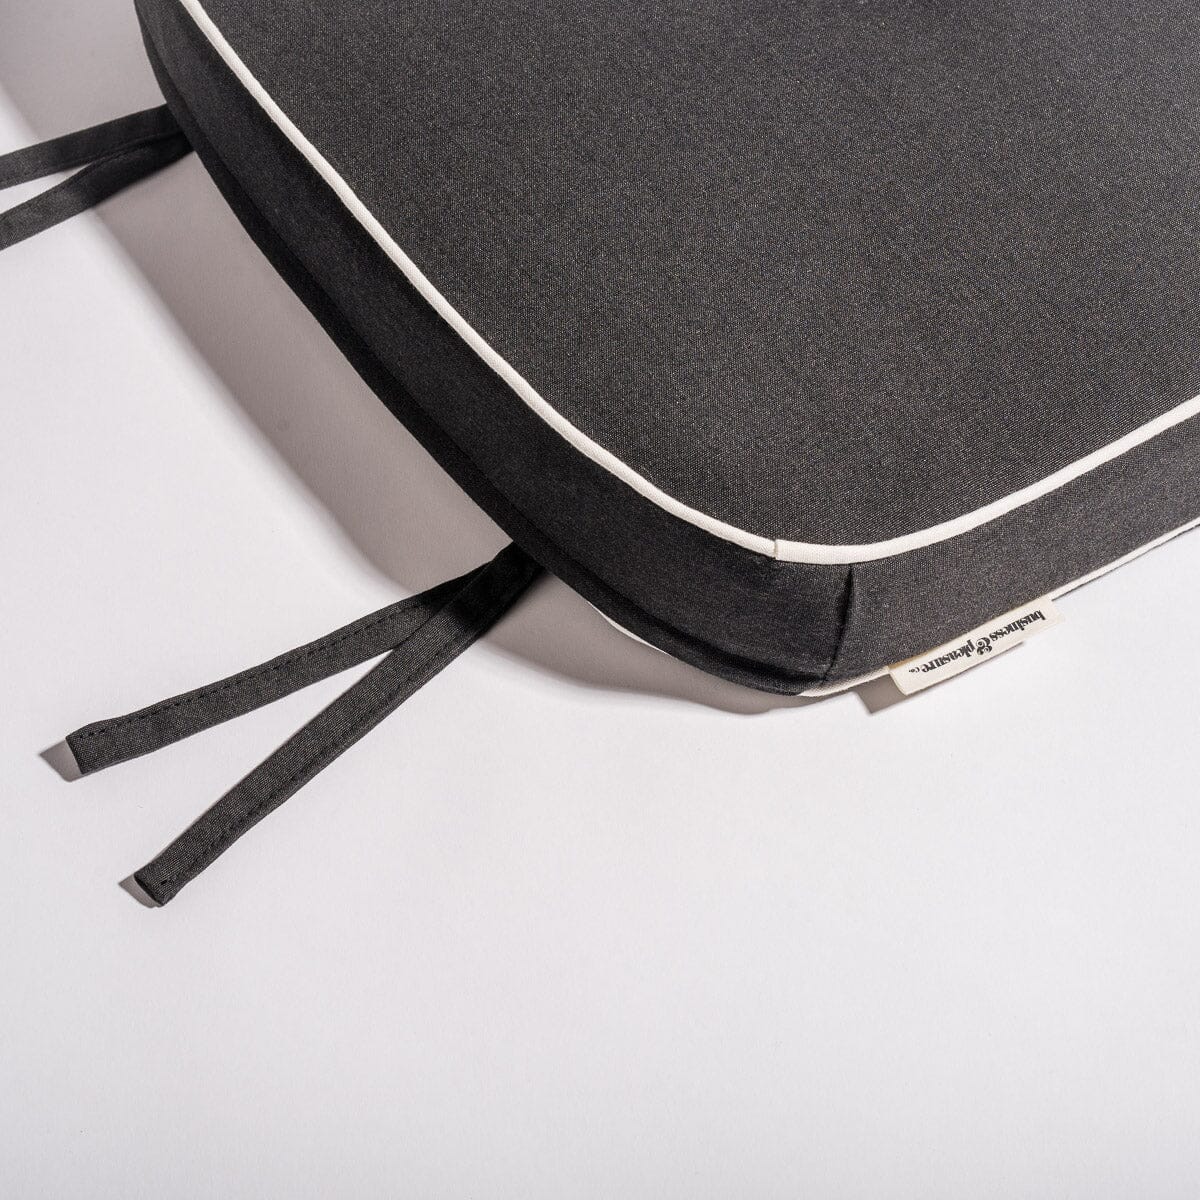 The Al Fresco Chair Cushion - Rivie Black Al Fresco Chair Cushion Business & Pleasure Co 